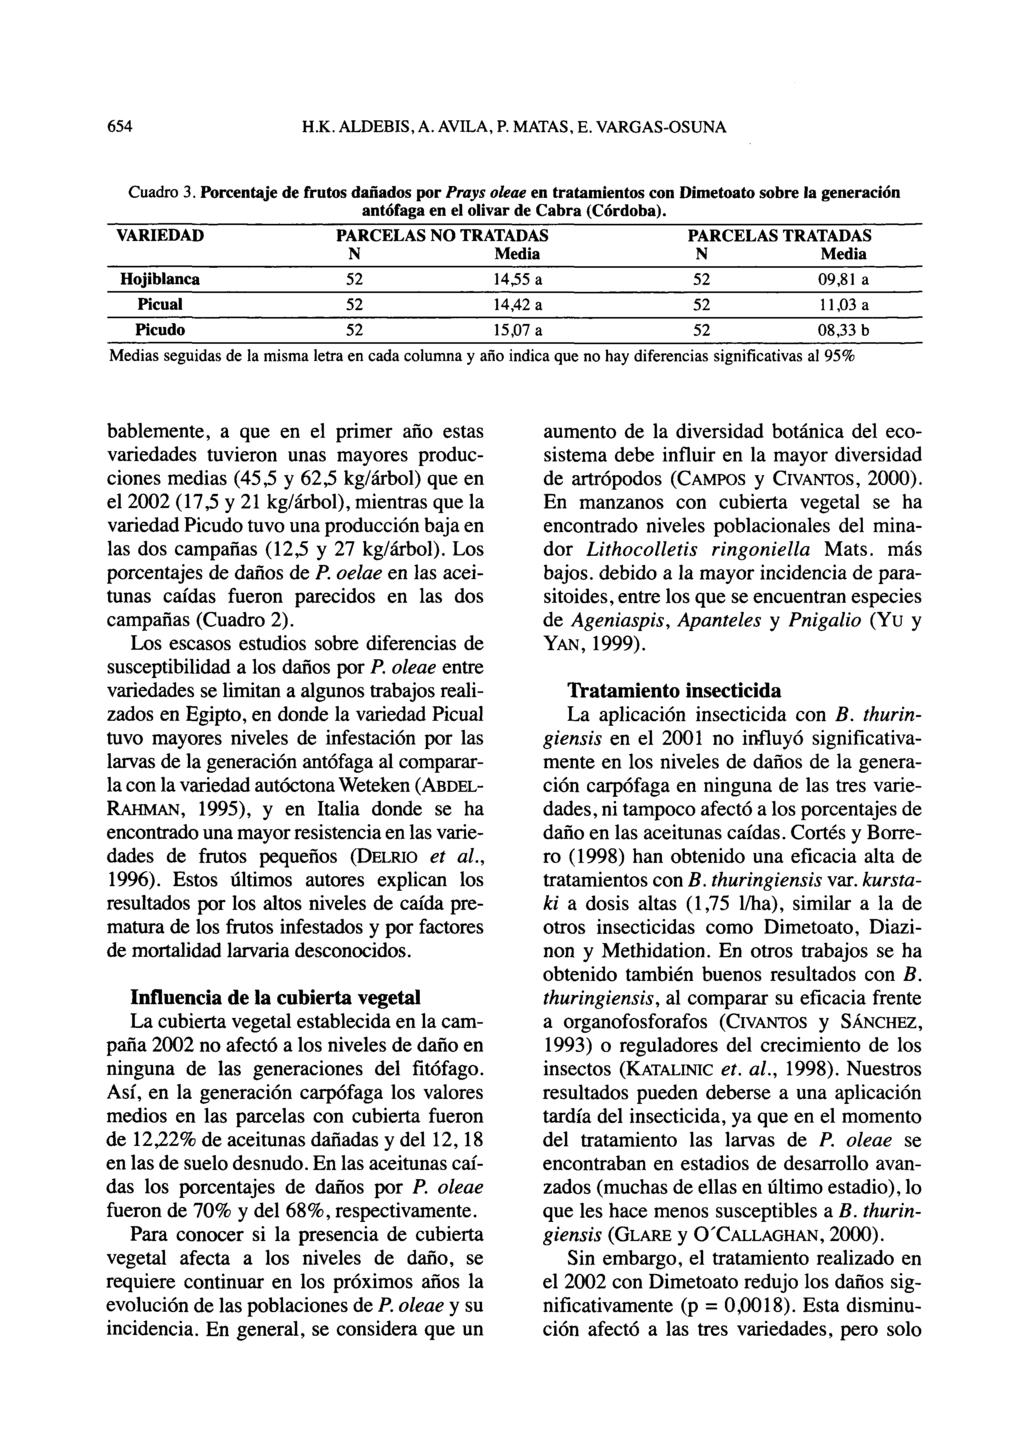 Cuadro 3. Porcentaje de frutos dañados por Prays oleae en tratamientos con Dimetoato sobre la generación antófaga en el olivar de Cabra (Córdoba).